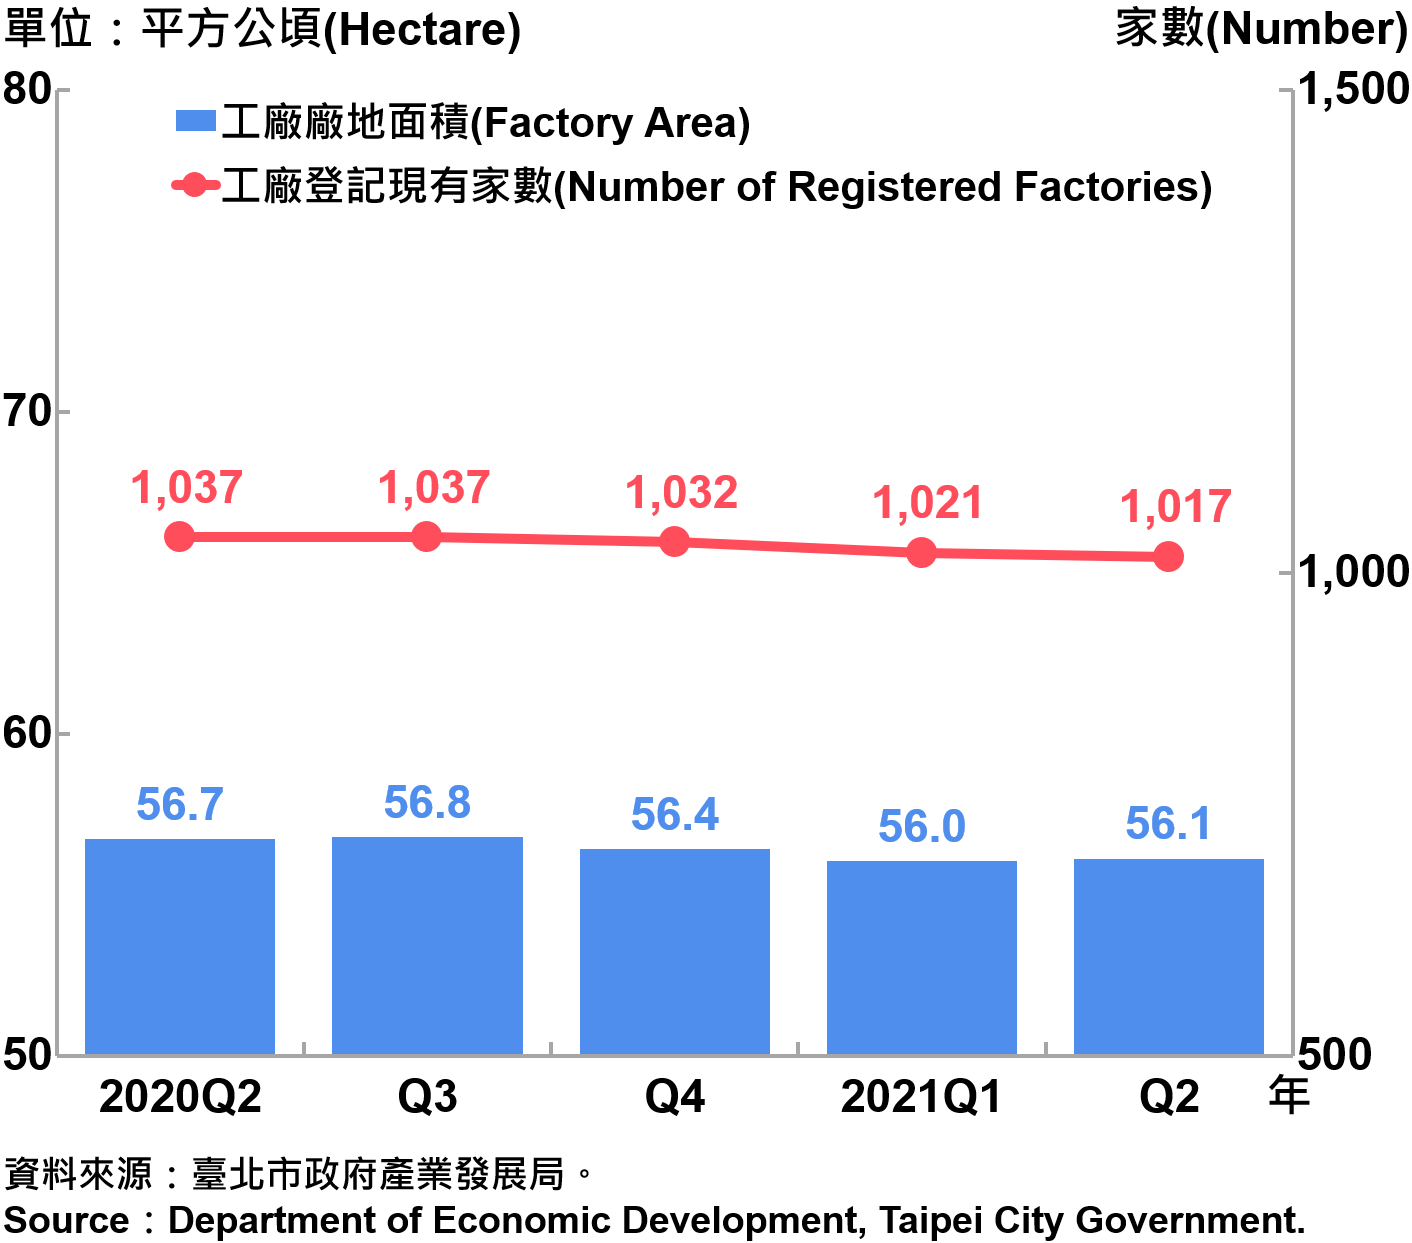 臺北市工廠登記家數及廠地面積—2021Q2 Number of Factories Registered and Factory Lands in Taipei—2021Q2